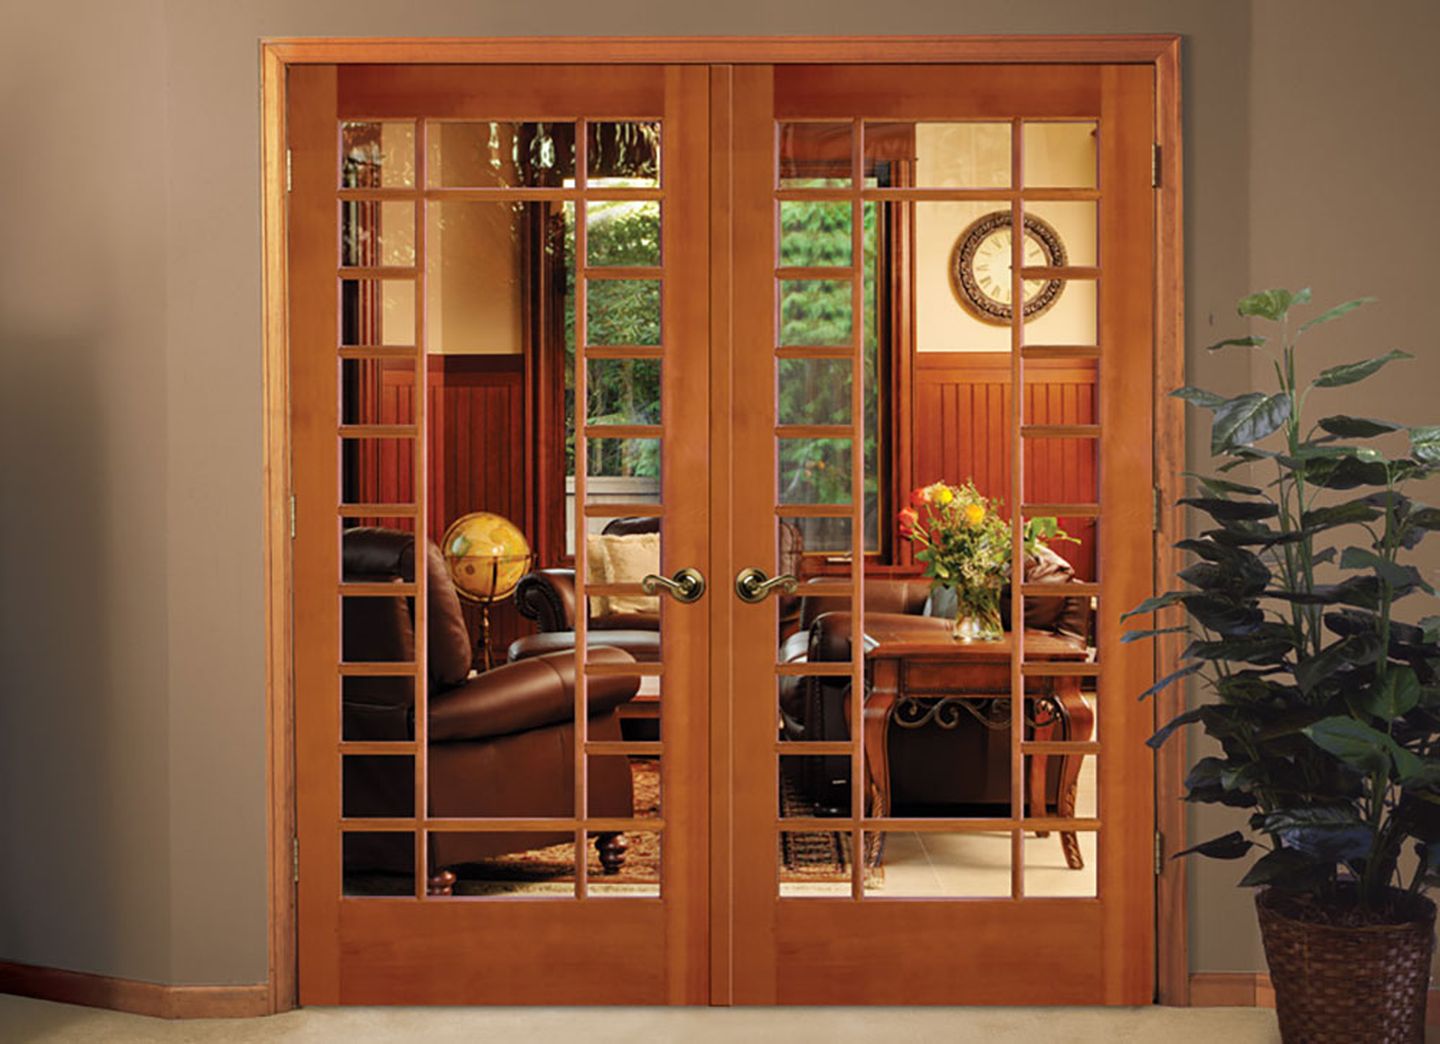 Model pintu kayu dengan kaca memiliki nuansa minimalis dan elegan.